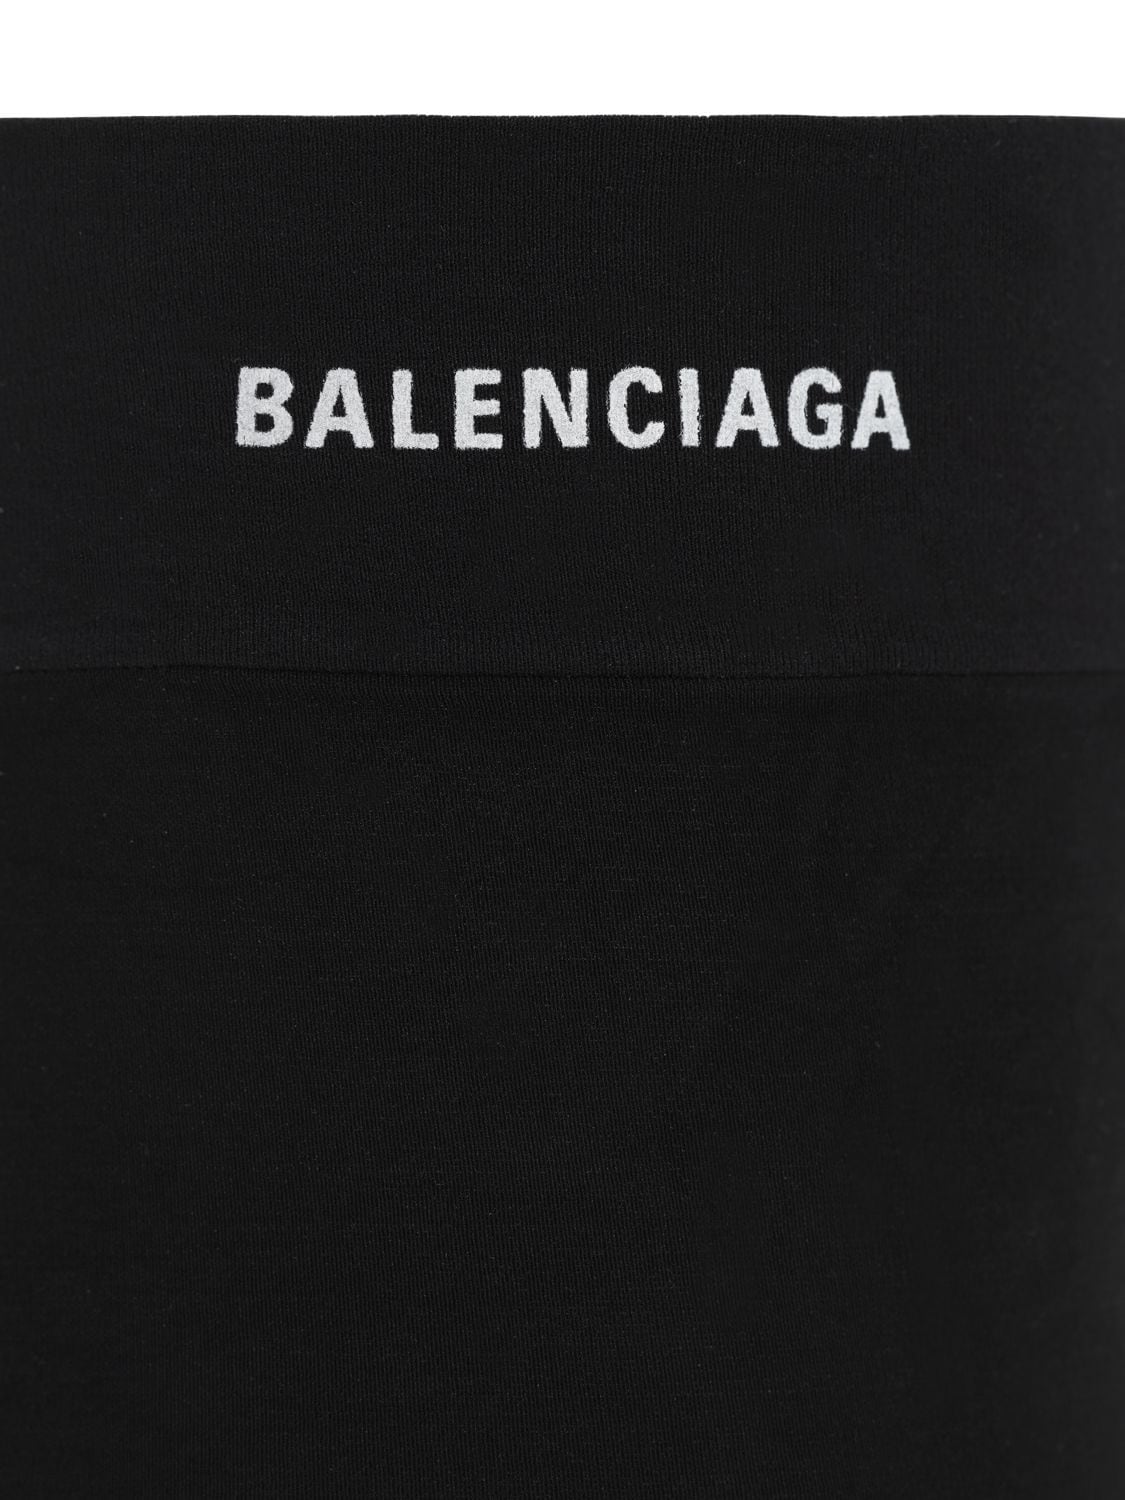 Balenciaga 通身新logo裤袜 In Black